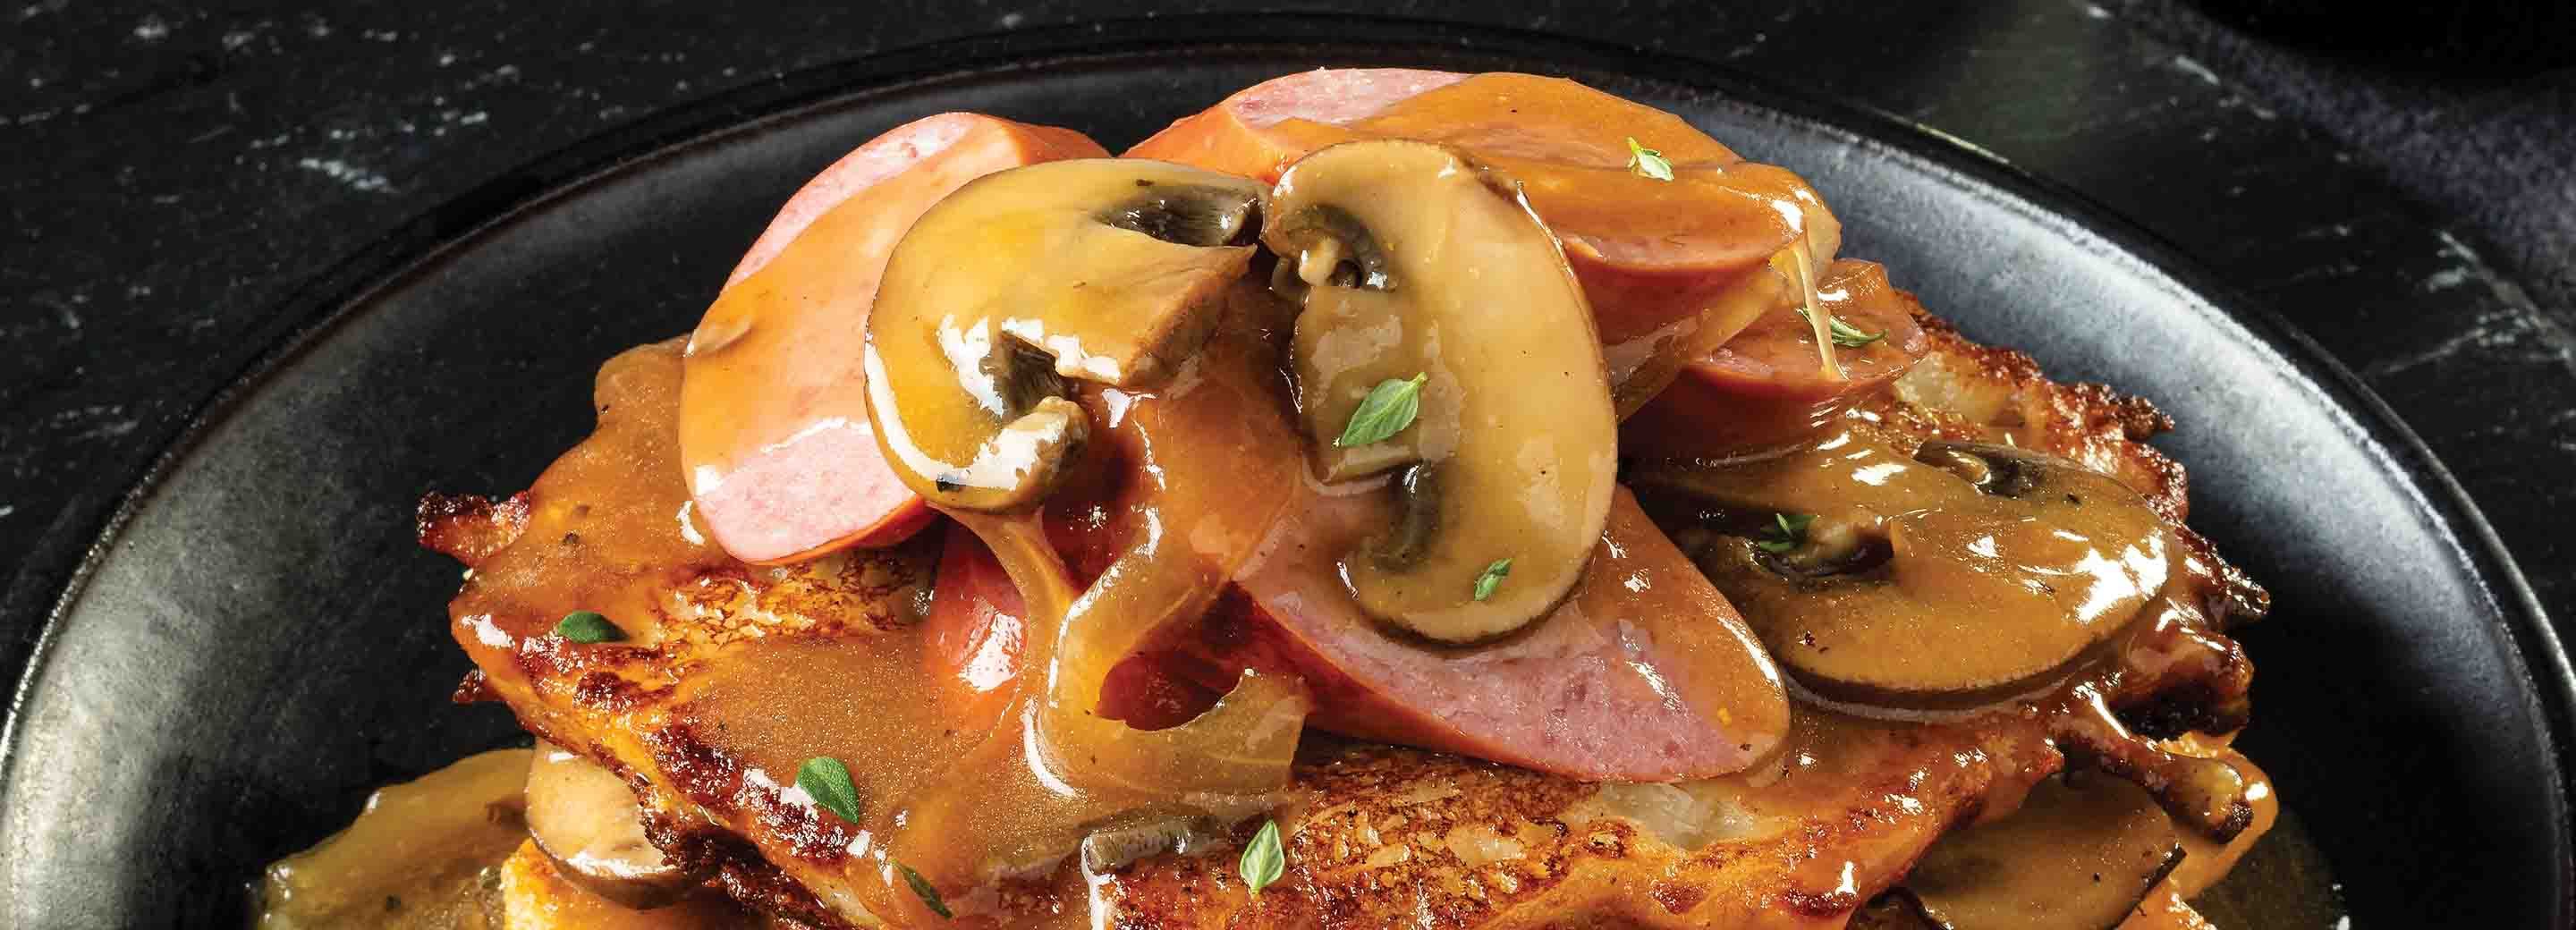 Potato Pancakes with Onion Gravy & Smoked Sausage